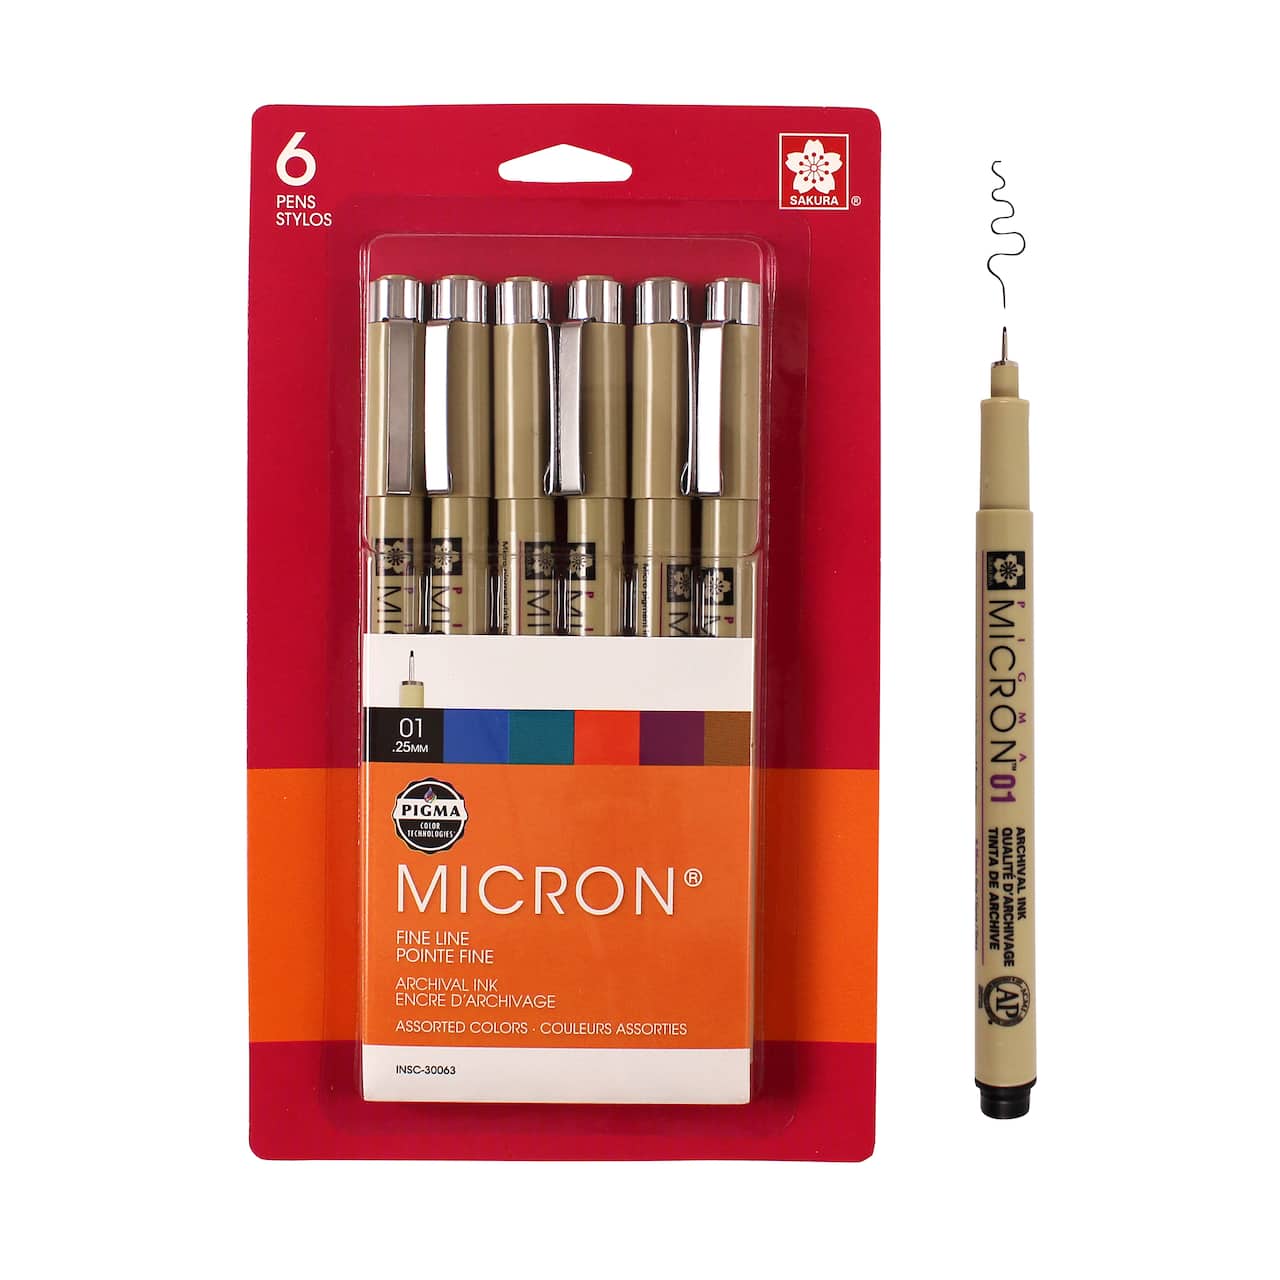 Pigma&#xAE; Micron&#x2122; 01 Fine Line 6 Color Pen Set